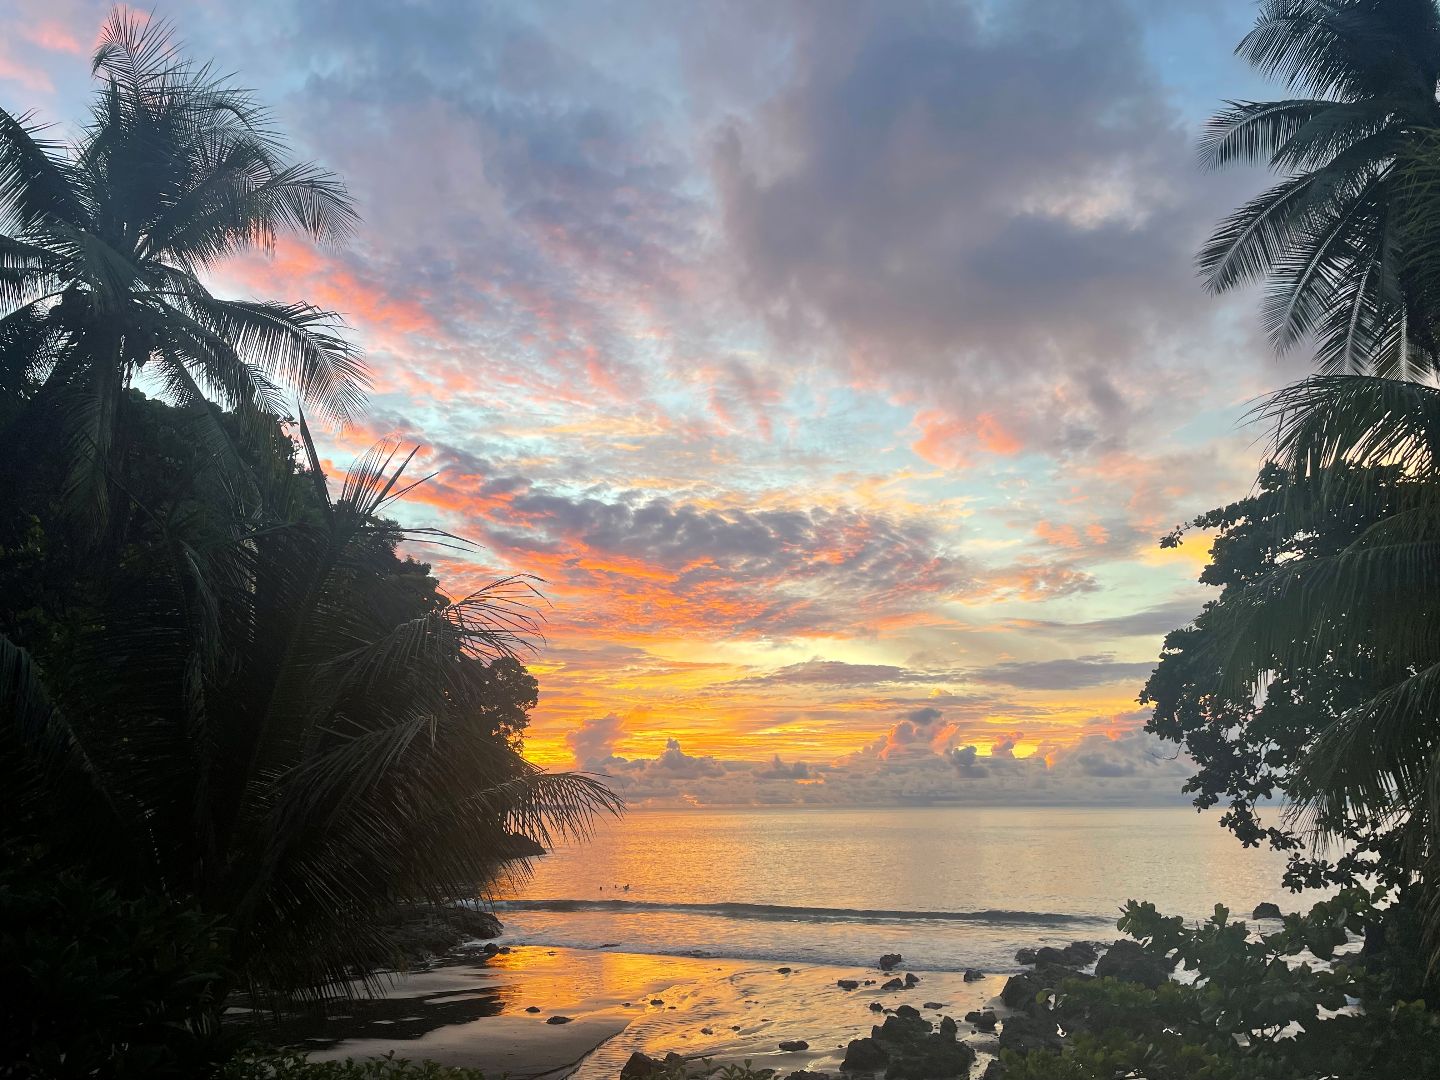 Sunset over ocean in Costa Rica